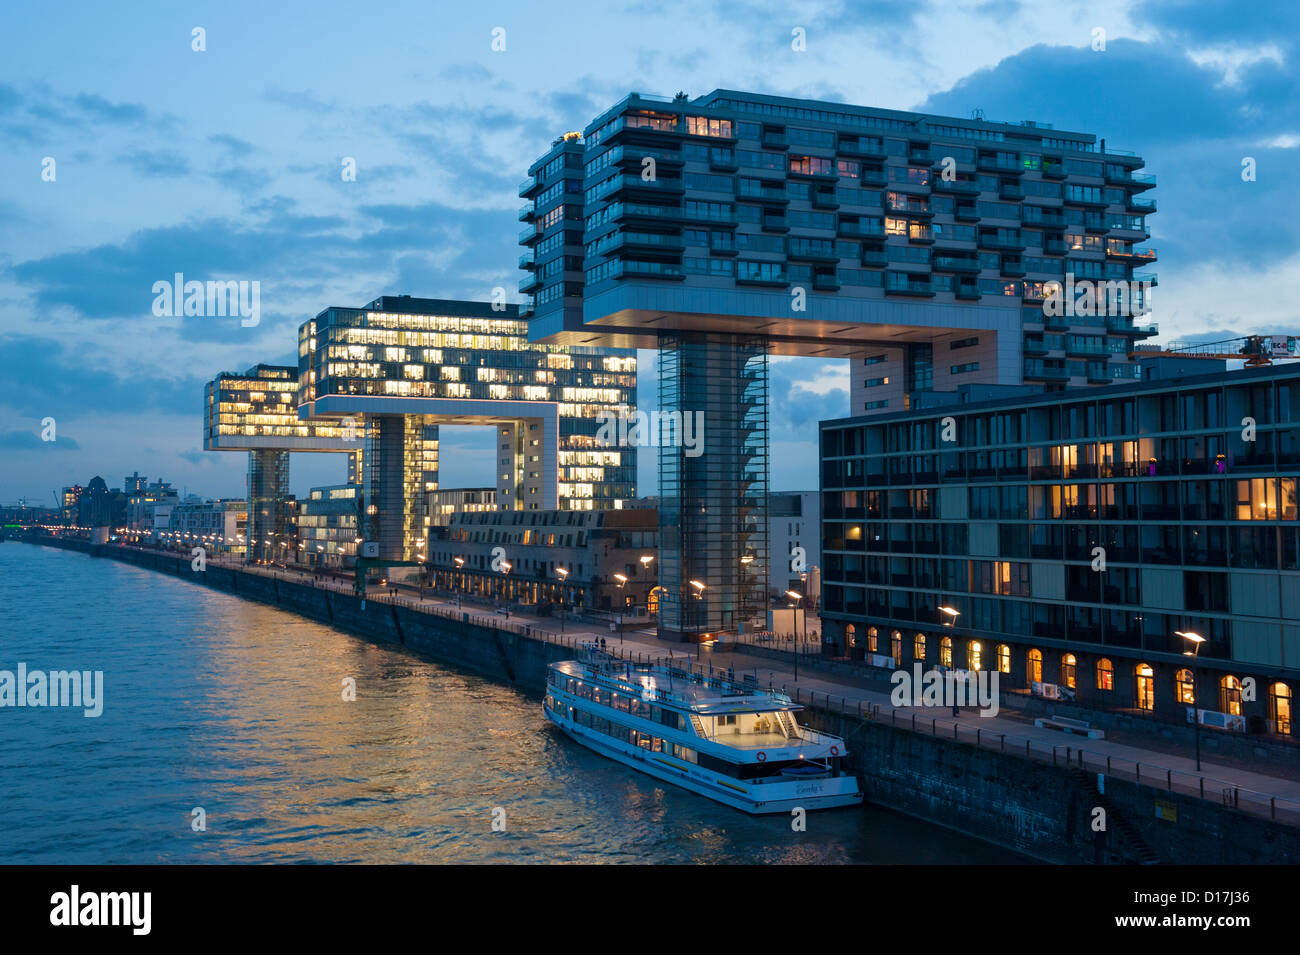 Abends Blick auf modernen Kran-Häuser am Rheinauhafen gemischte Wohn-und Gewerbeimmobilien Entwicklung am Fluss Rhein Köln Stockfoto